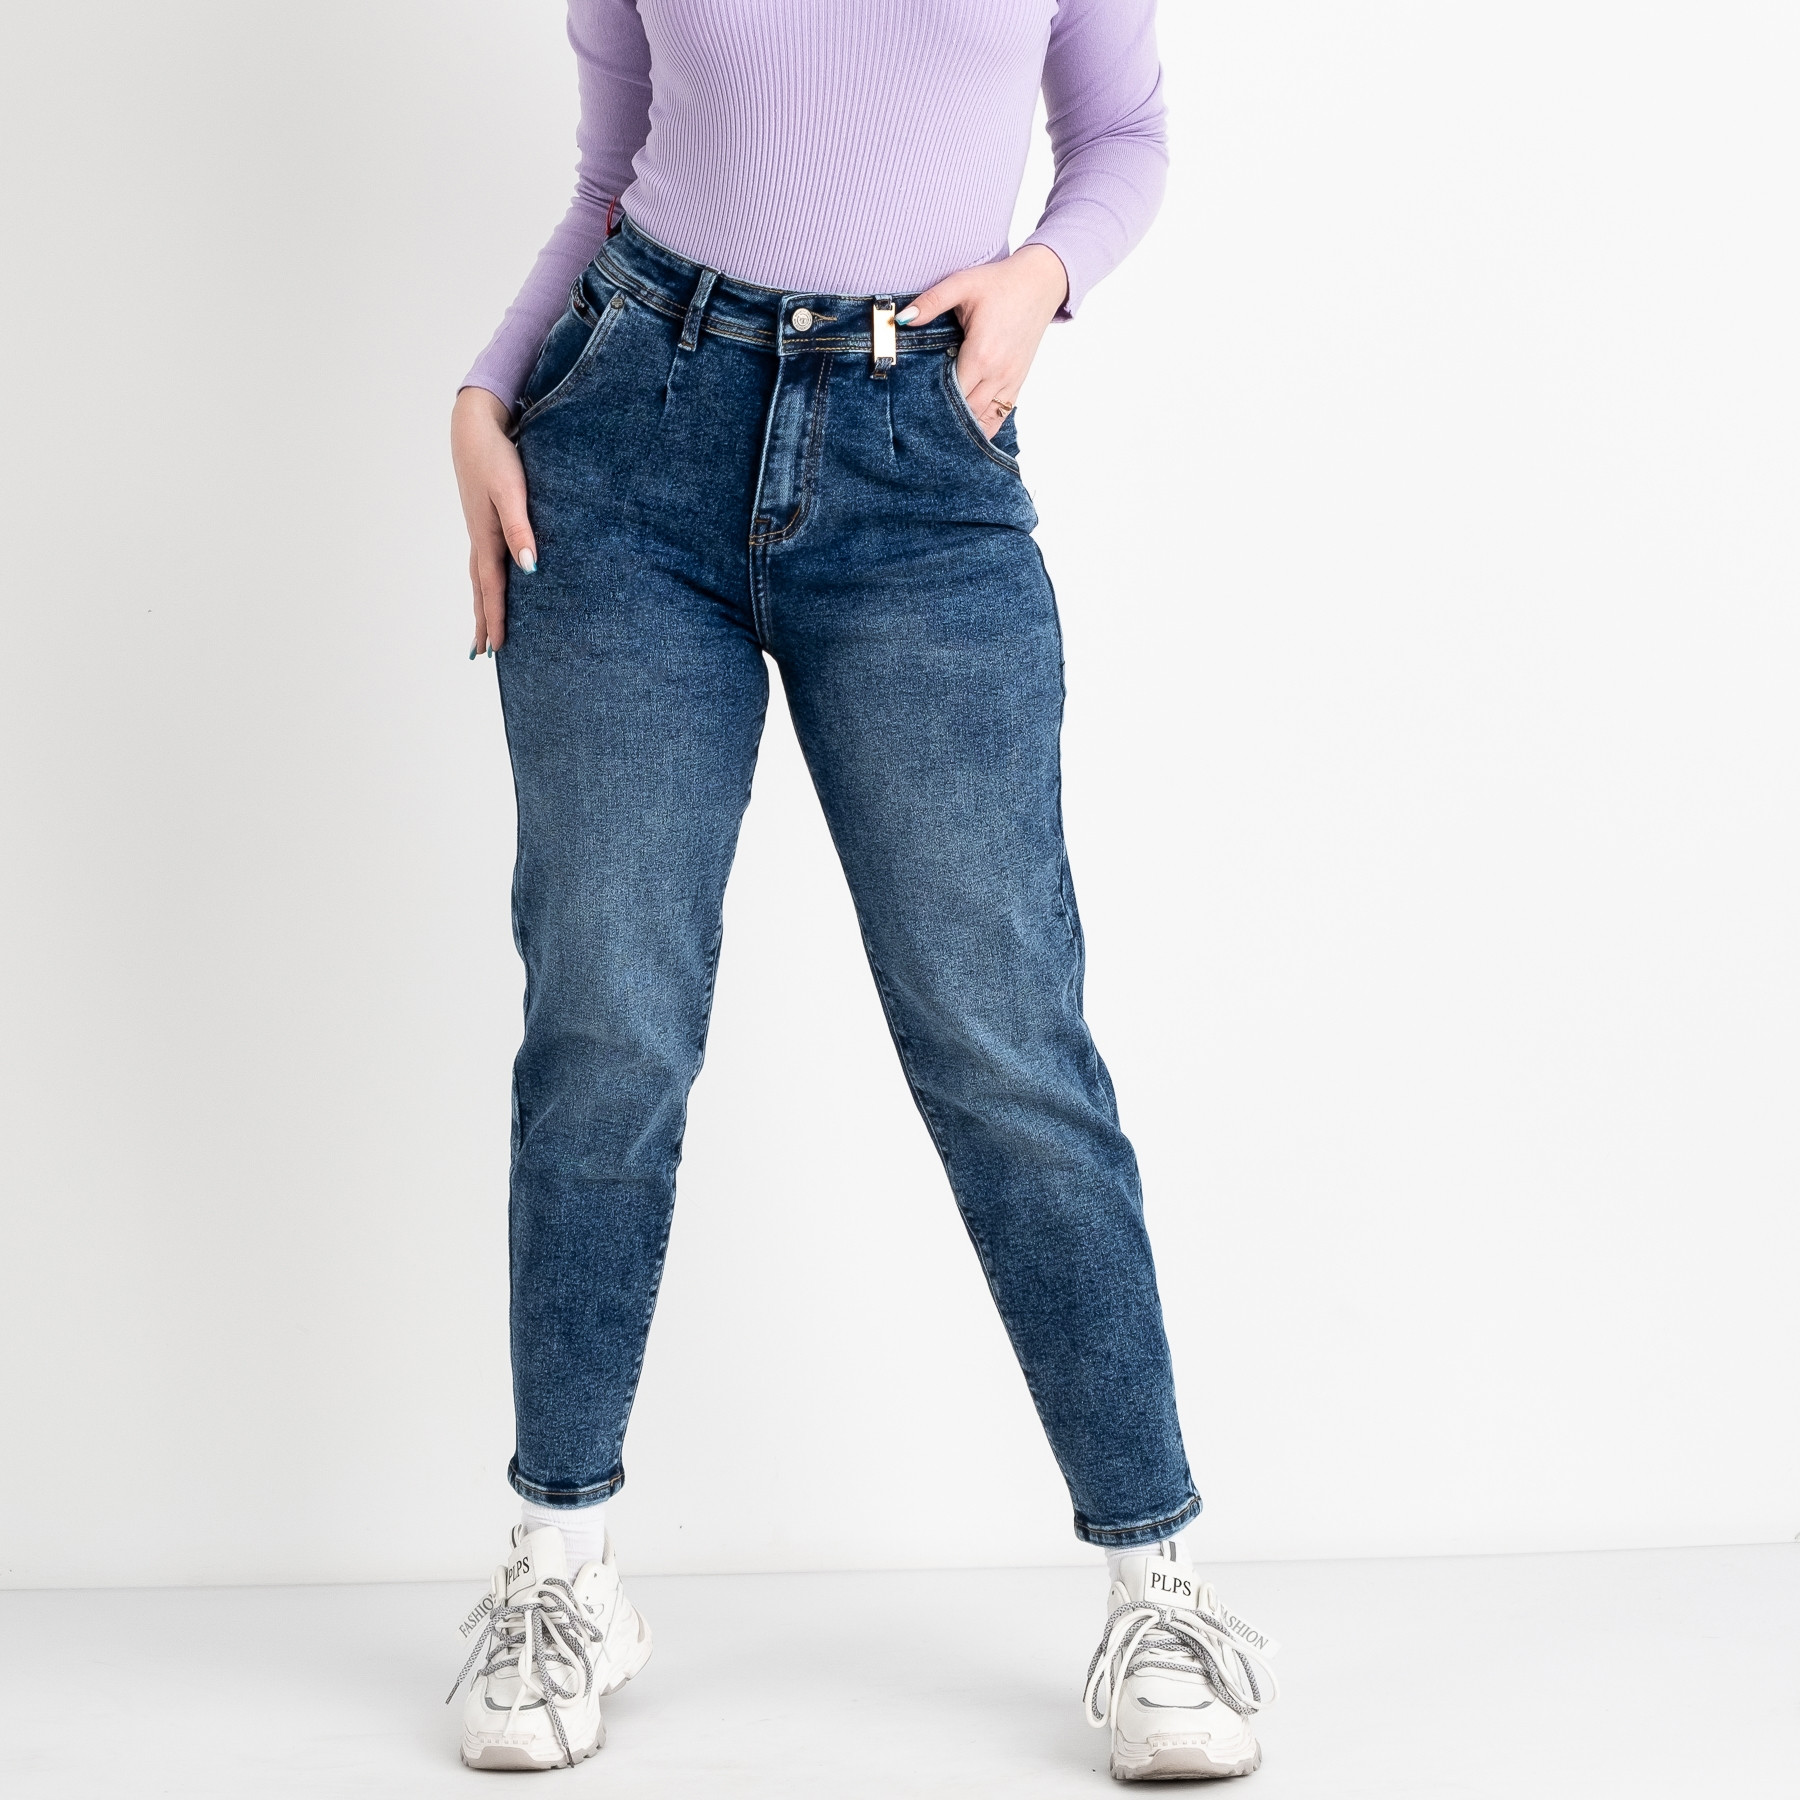 0657-8 MS Relucky  джинсы-слоучи женские полубатальные синие стрейчевые (6 ед. размеры:28.29.30.31.32.33)